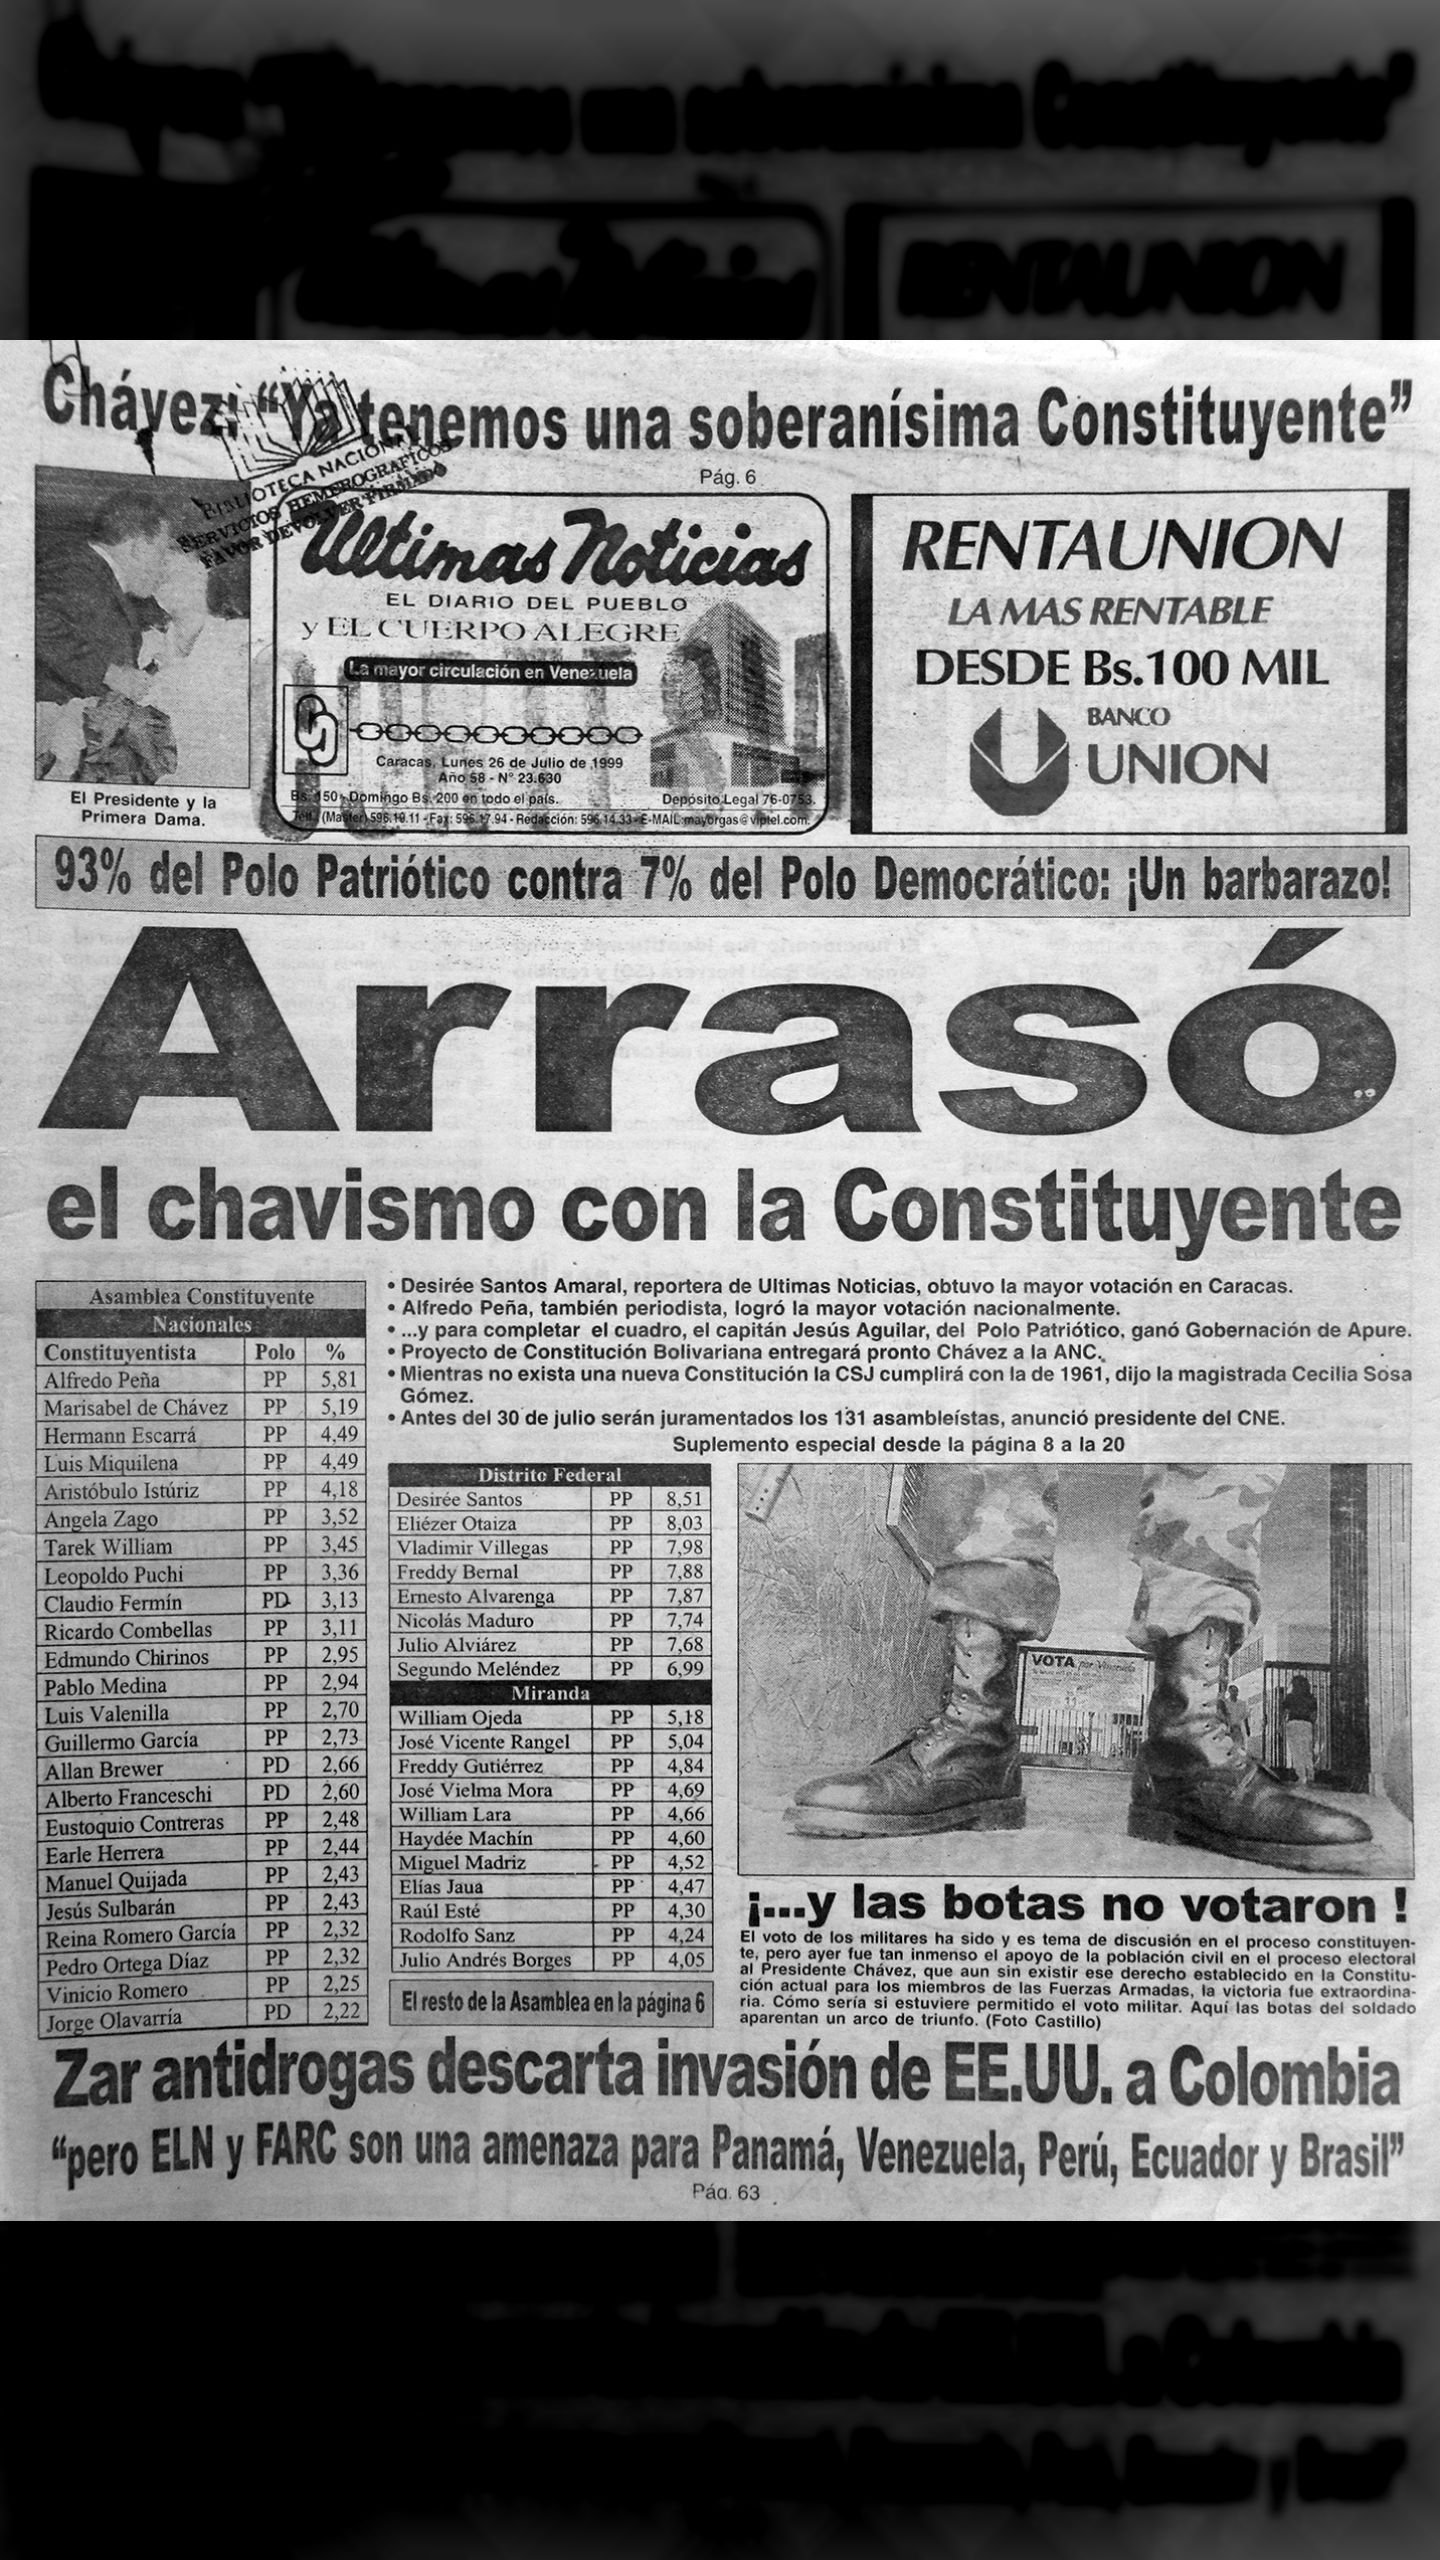 93% del Polo Patriótico contra 7% del Polo Democrático: ¡Un barbarazo! (Últimas Noticias, 26 de julio 1999)